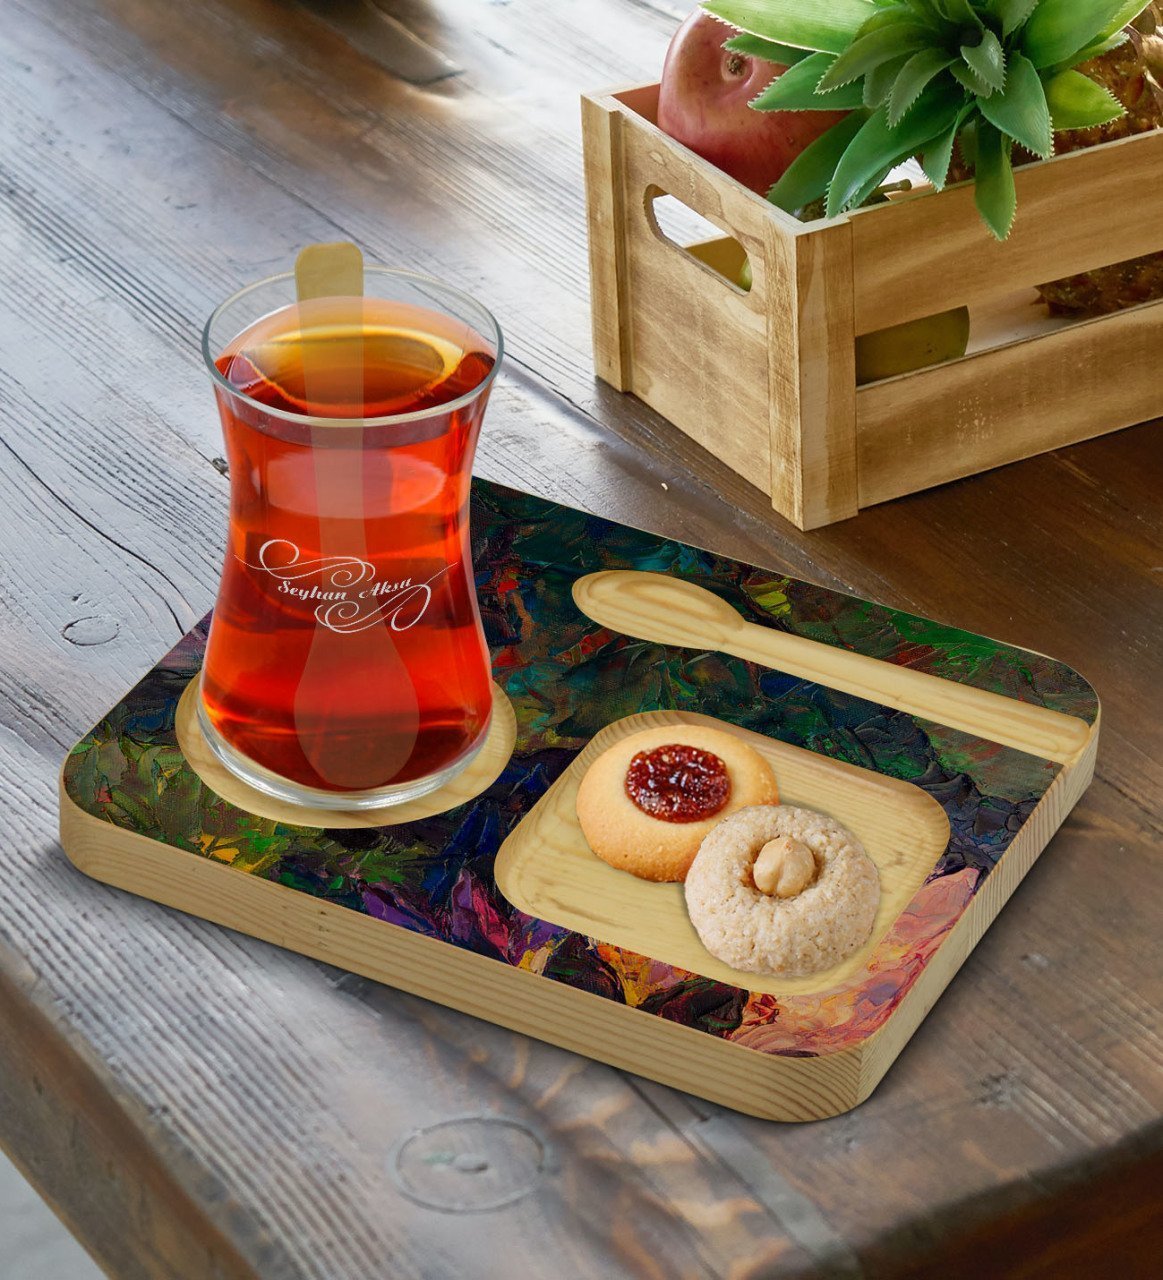 Kişiye Özel Doğal Ahşap Kaşıklı Sunum Tabağı ve Heybeli Çay Bardağı Hediye Seti - Model 19